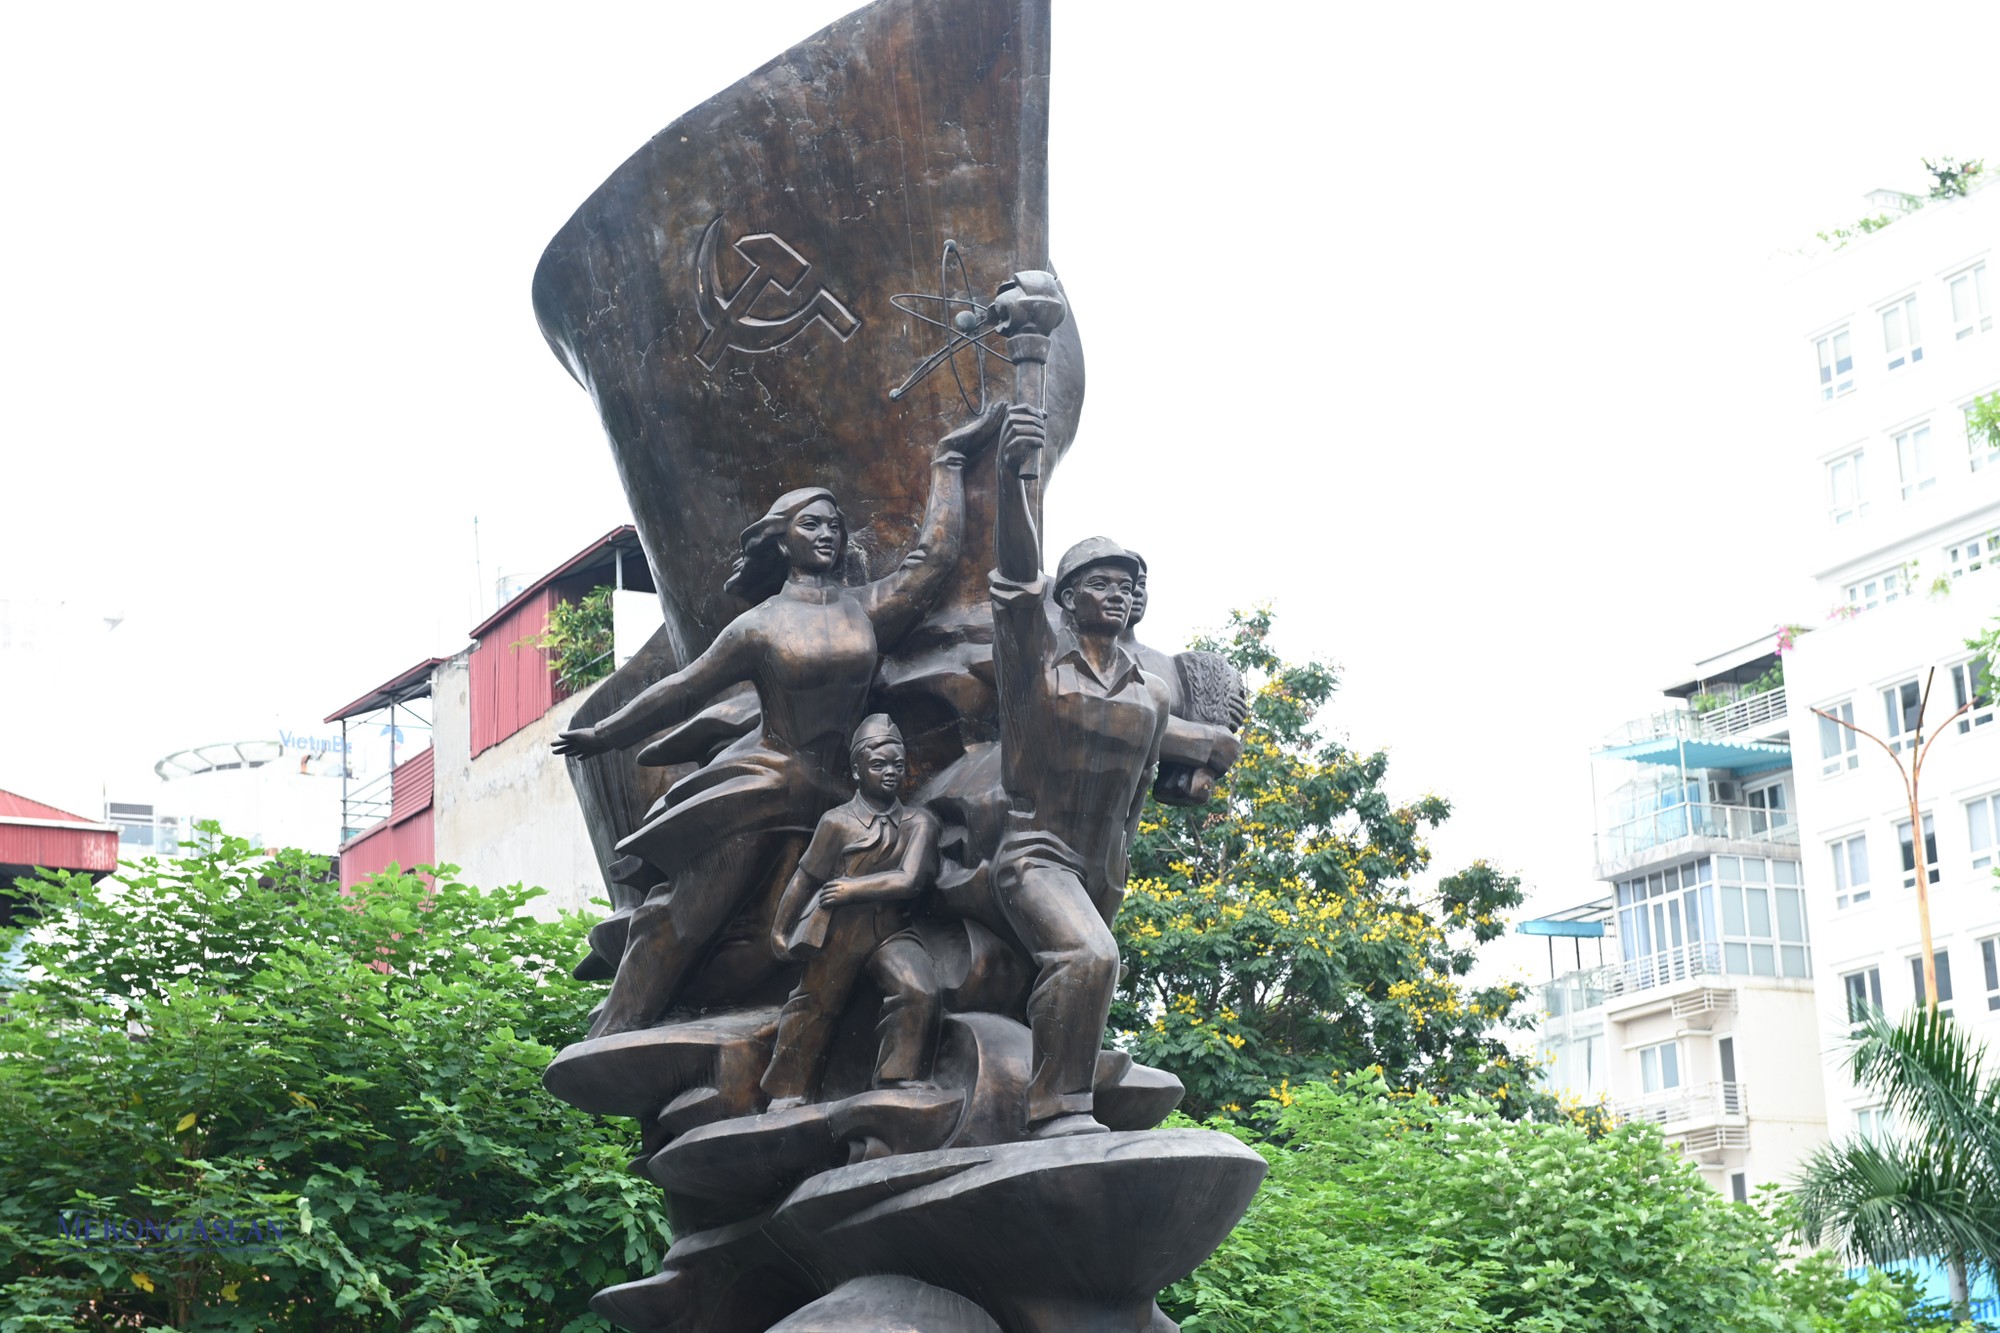  Ngắm các công trình tượng đài công cộng tại Hà Nội ảnh 14